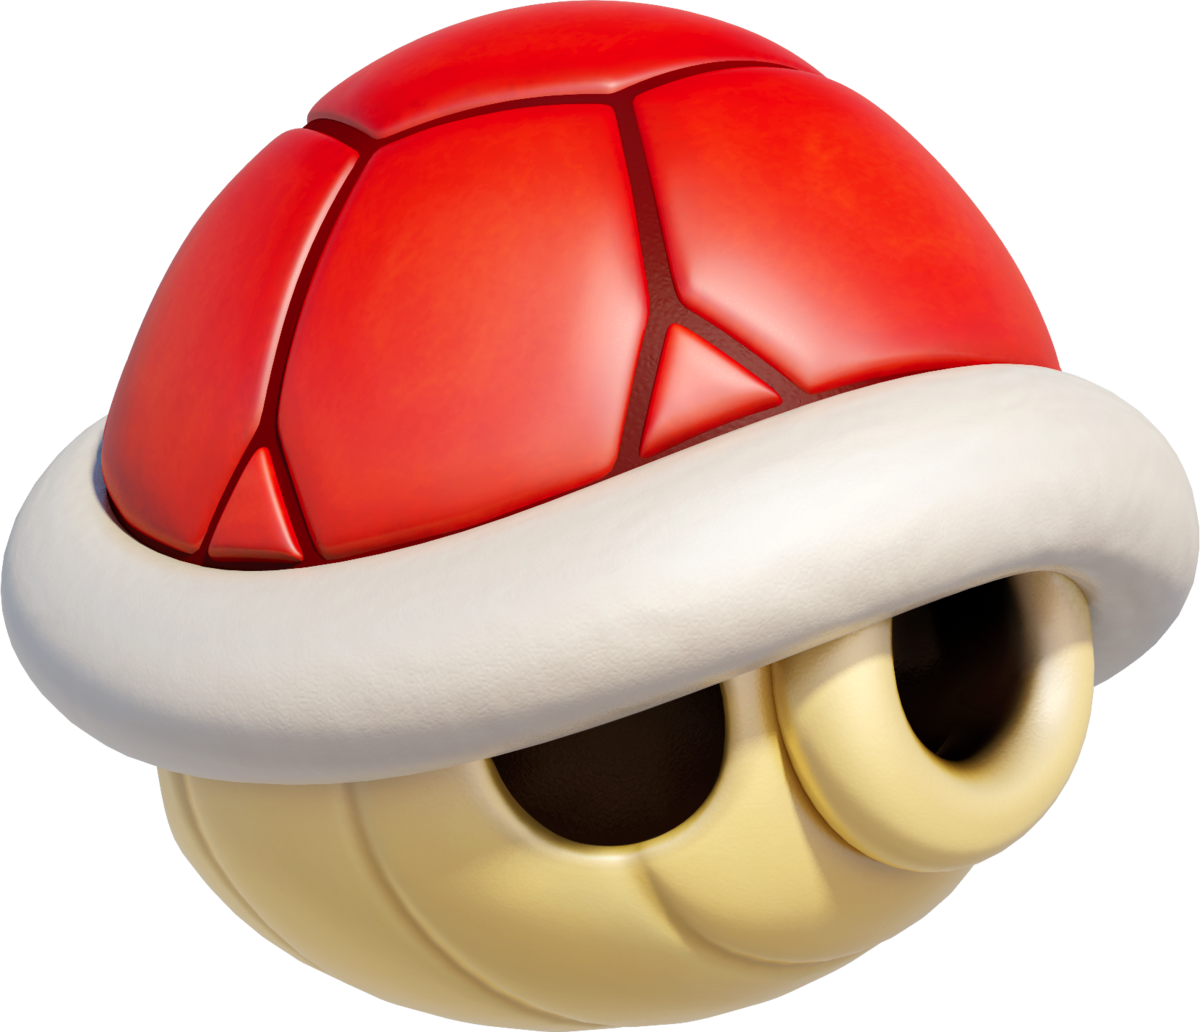 Red Shell Super Mario Wiki The Mario Encyclopedia